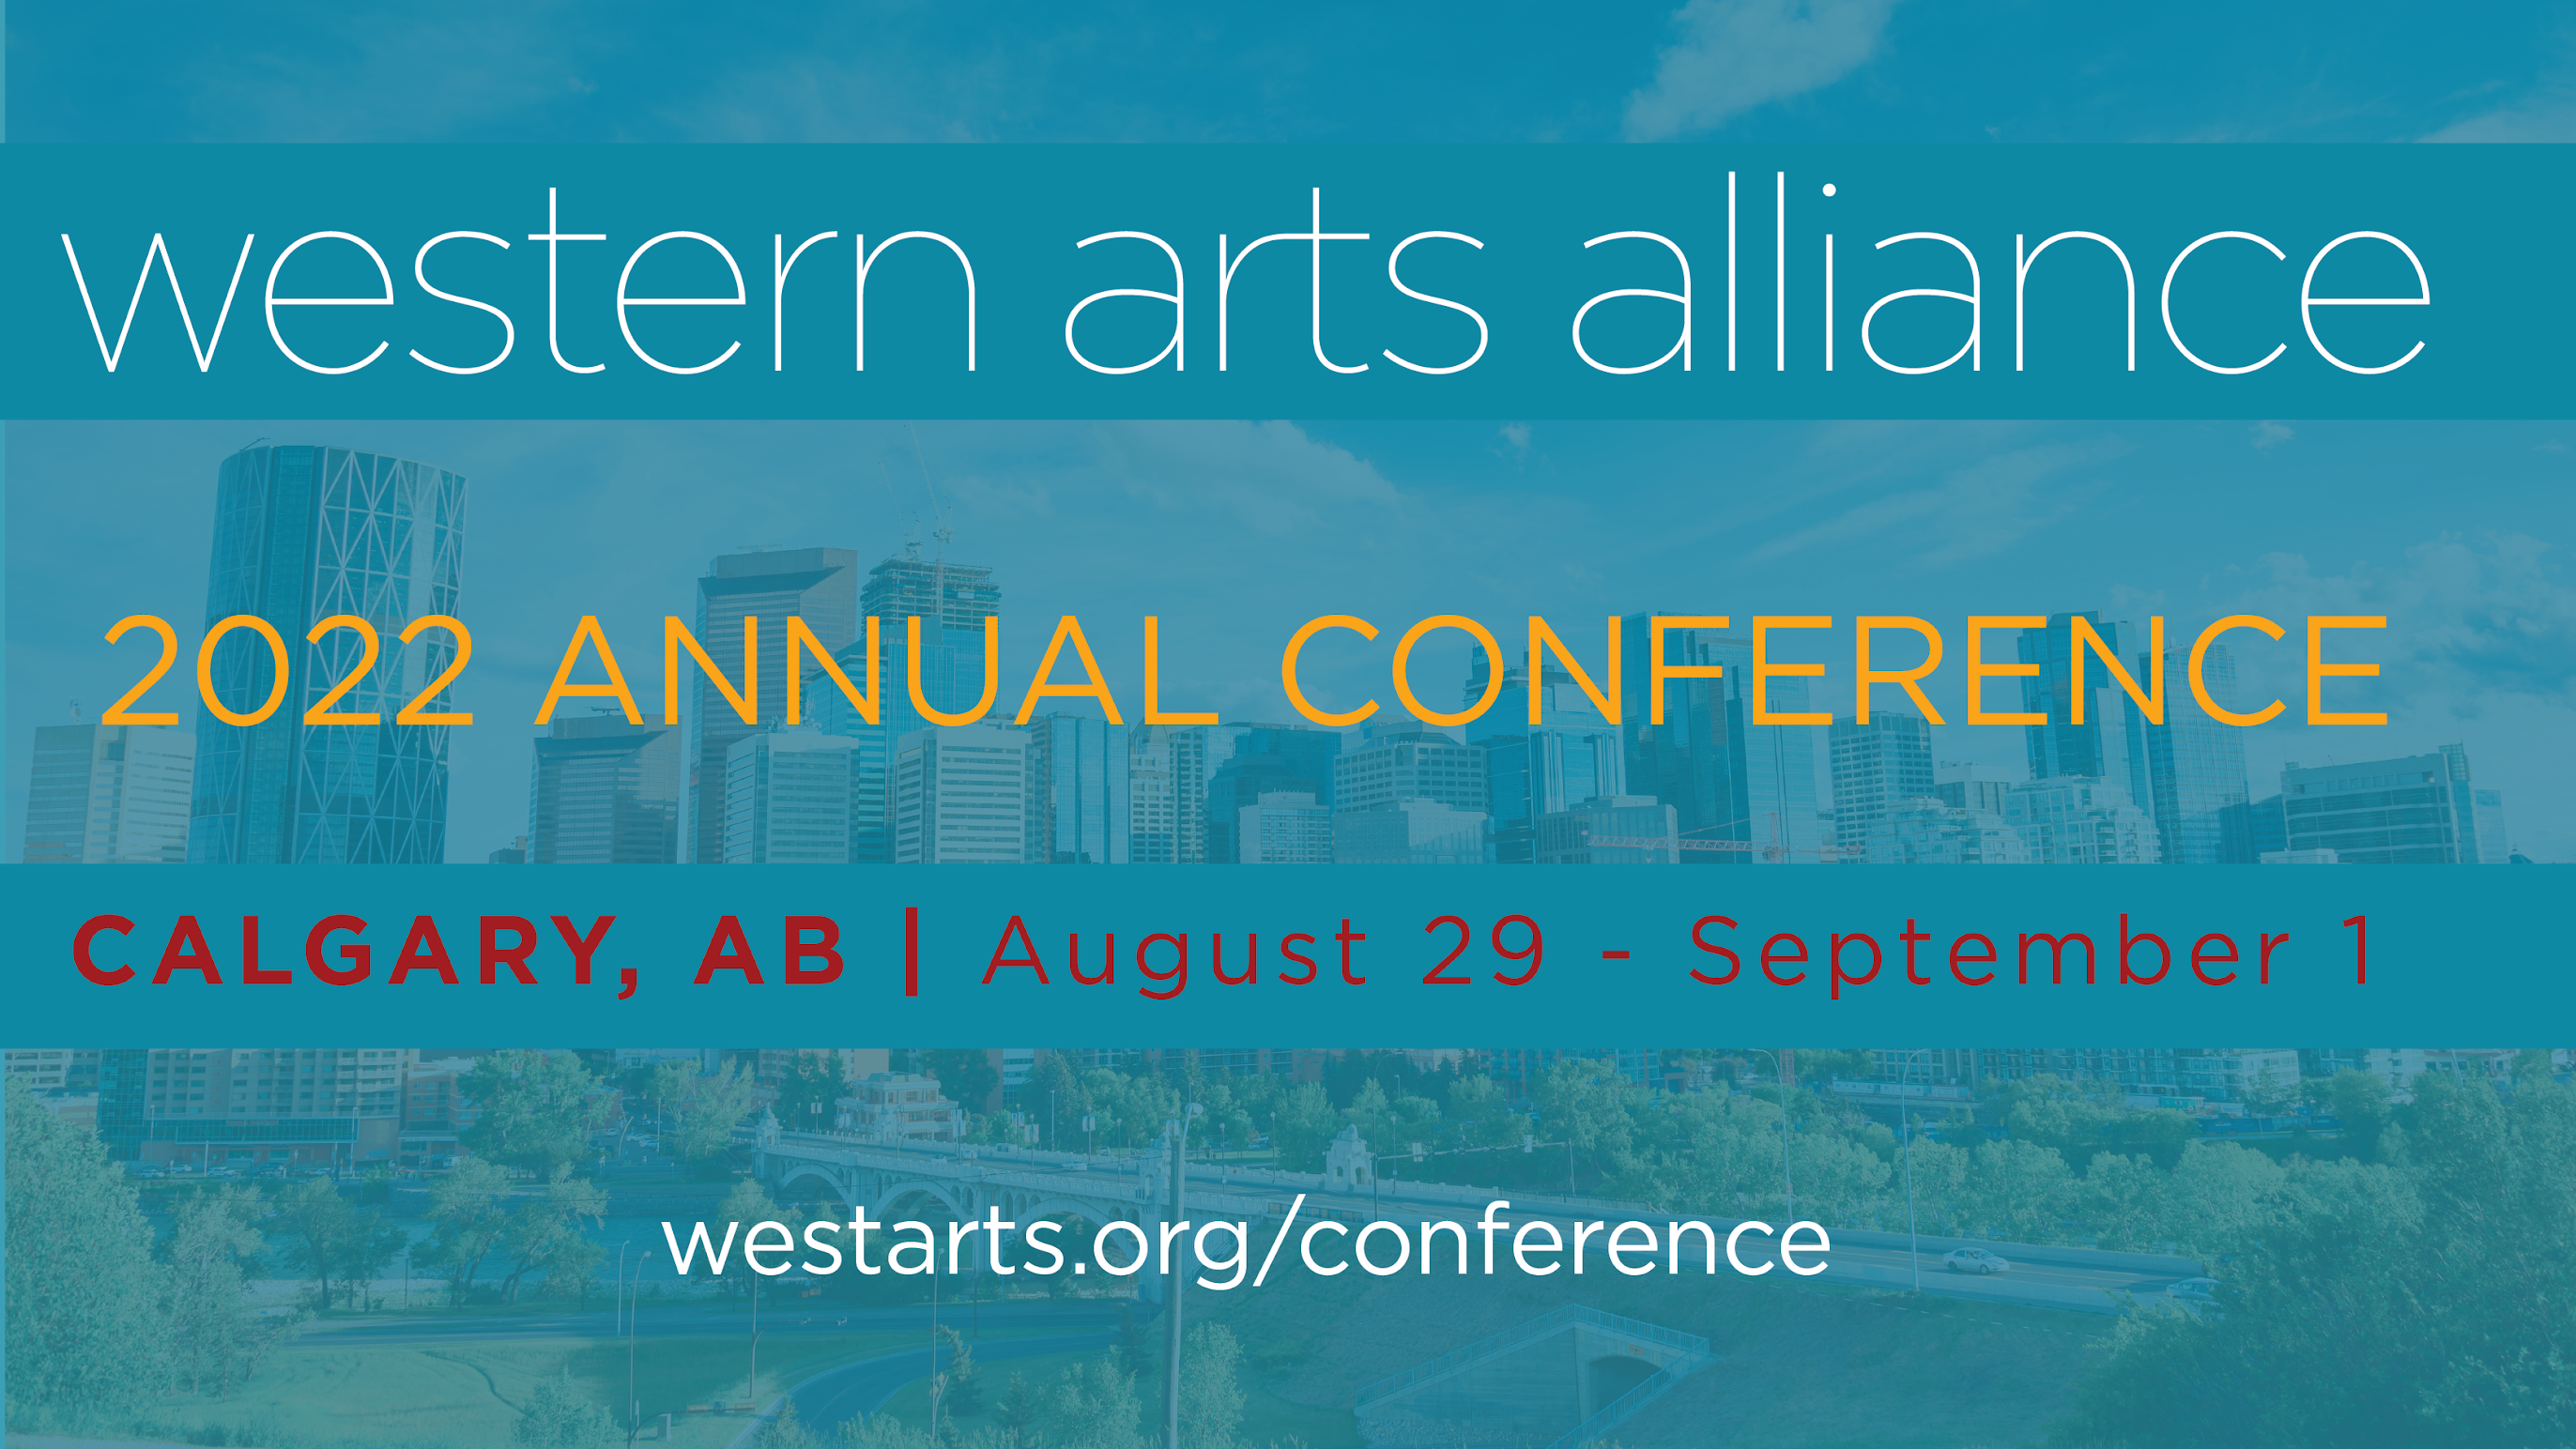 Photo de la ligne d'horizon de Calgary en arrière-plan, avec l'inscription « Western Arts Alliance, 2022 Annual Conference, Calgary, AB, August 29 to September 1 » au premier plan.